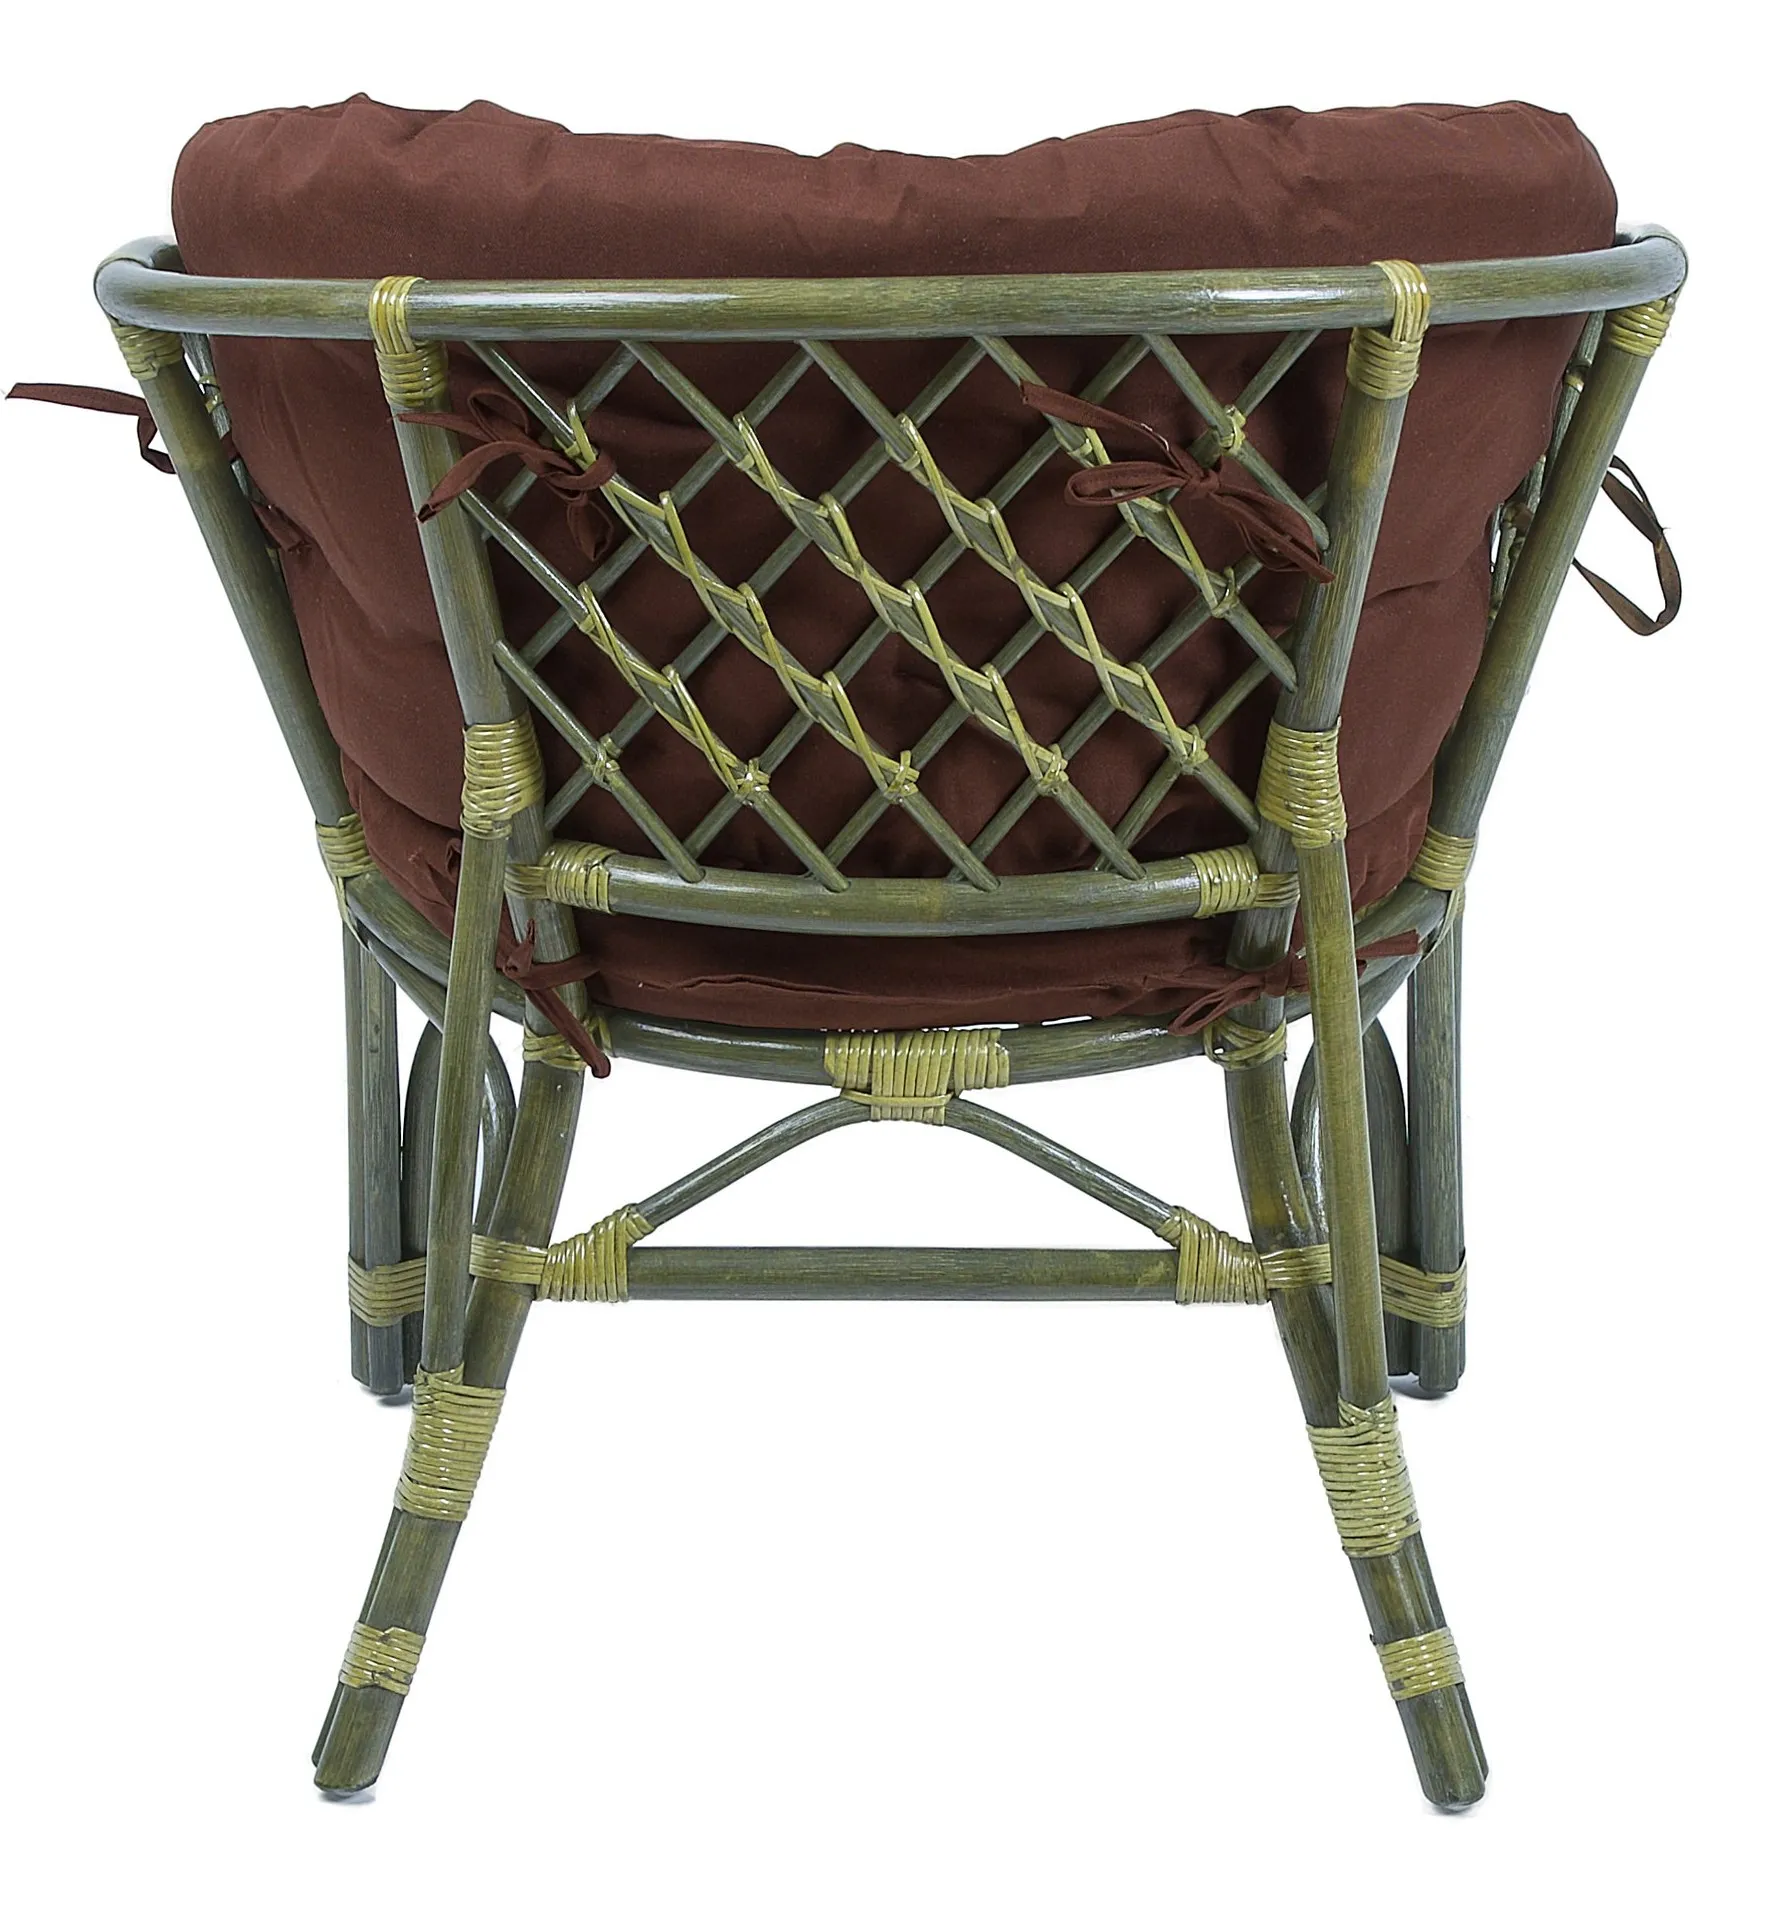 Комплект мебели из ротанга Багама дуэт с овальным столом олива (подушки твил полные коричневые)